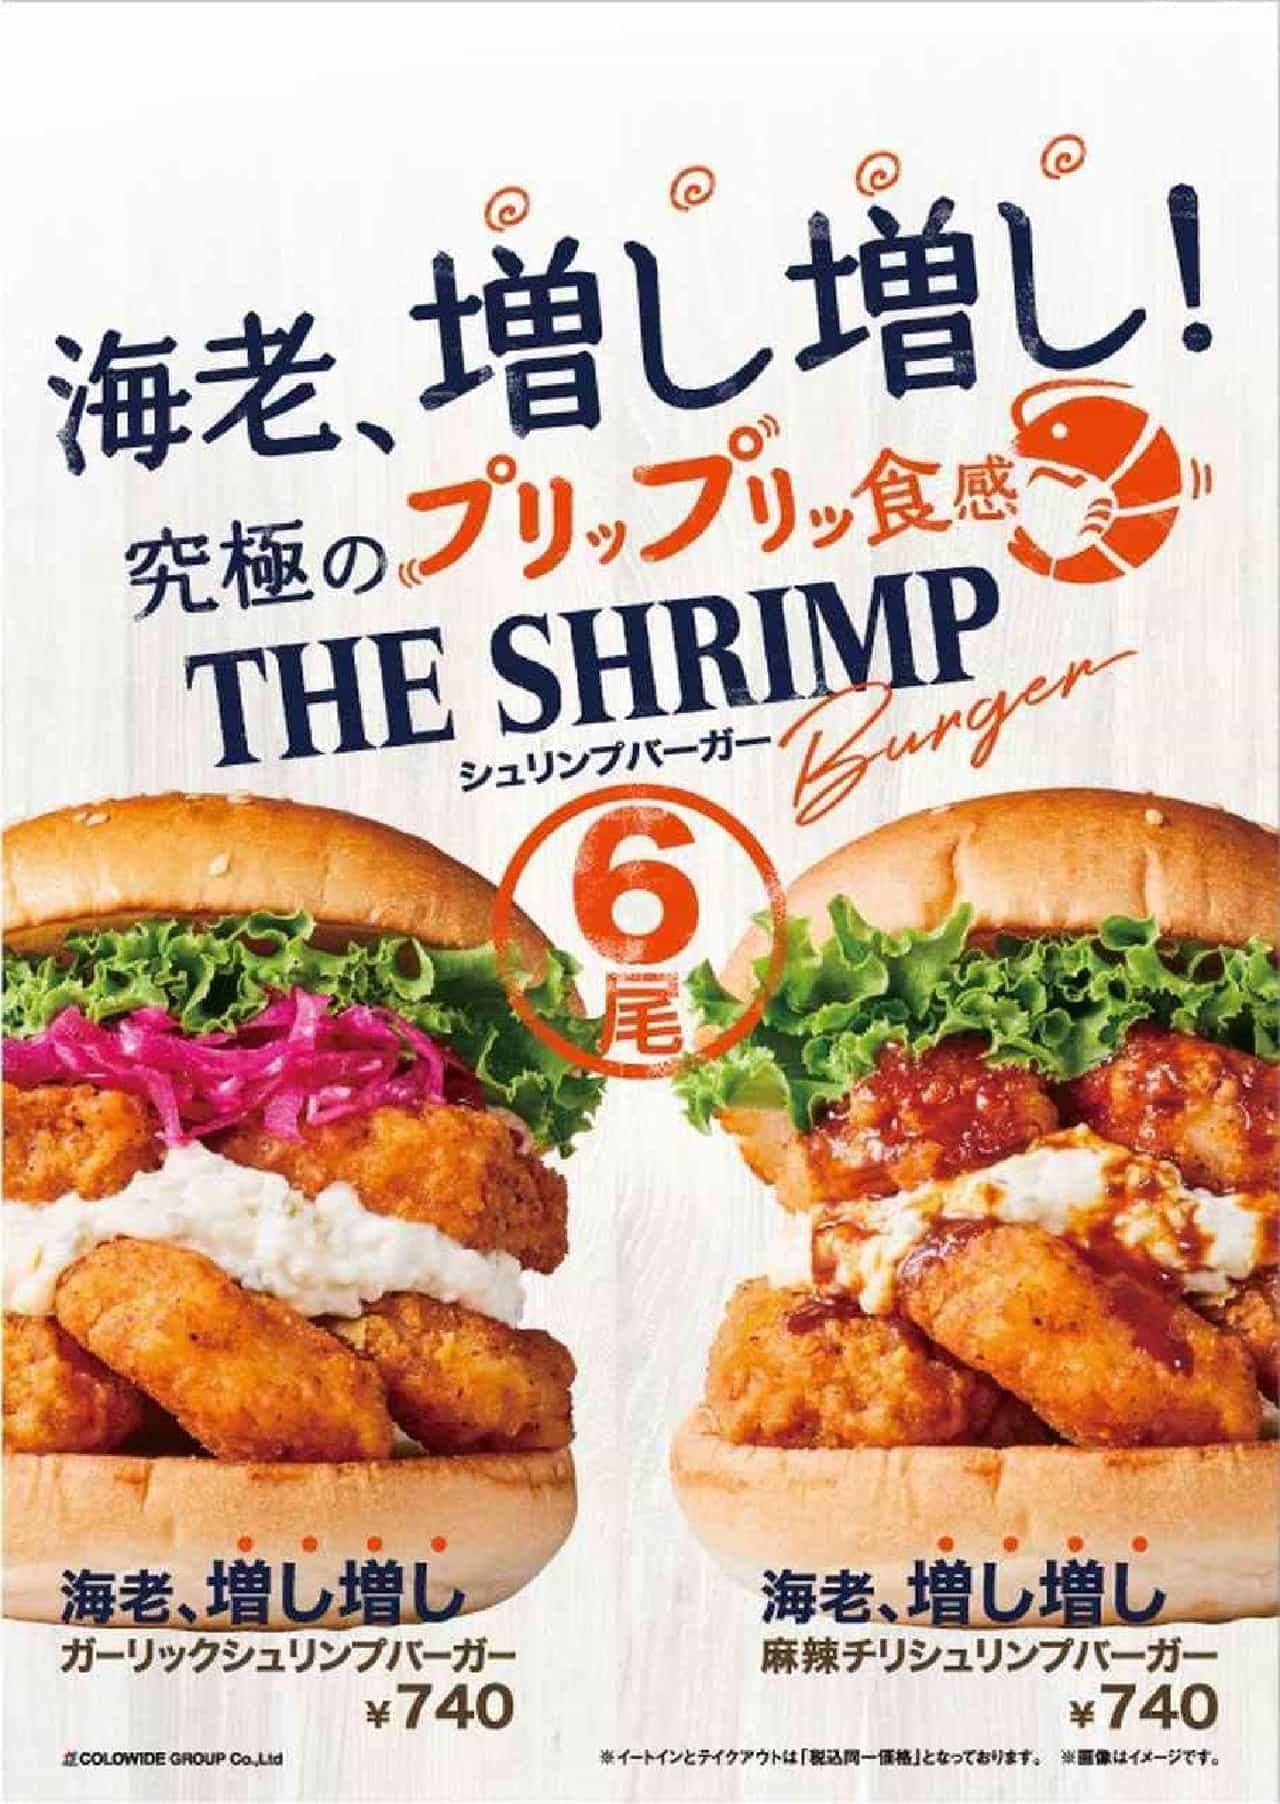 Freshness Burger "Extra Shrimp Garlic Shrimp Burger" and "Extra Shrimp Mao Chili Shrimp Burger